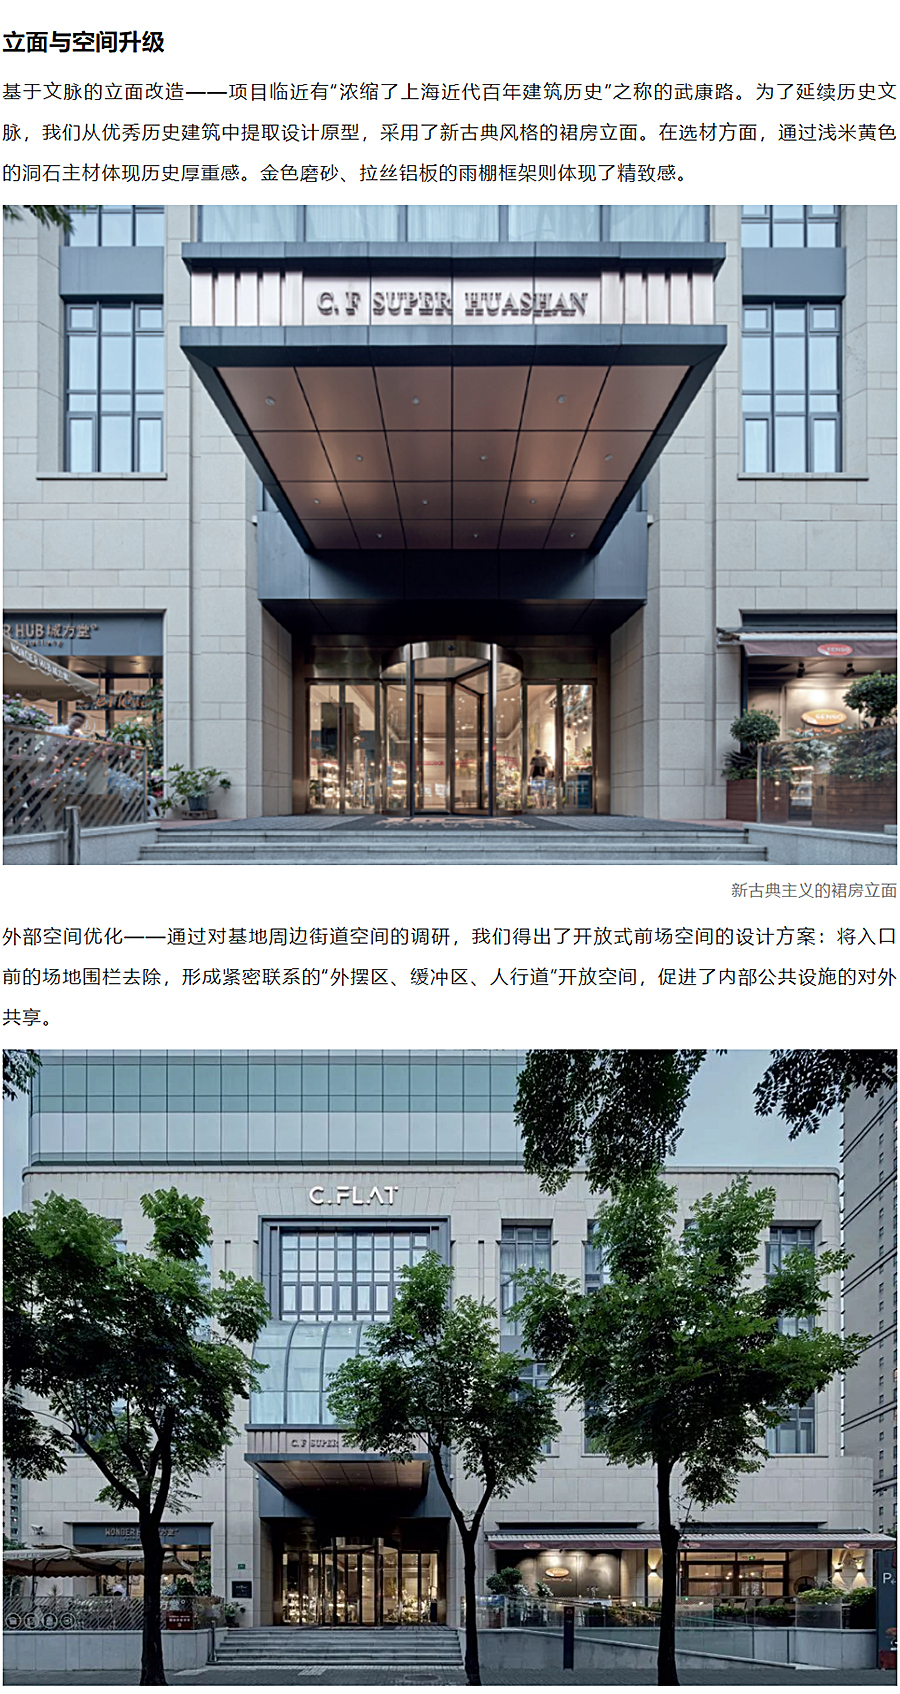 上海地产-_-城方城寓超级社区华山路店_0006_图层-7.jpg